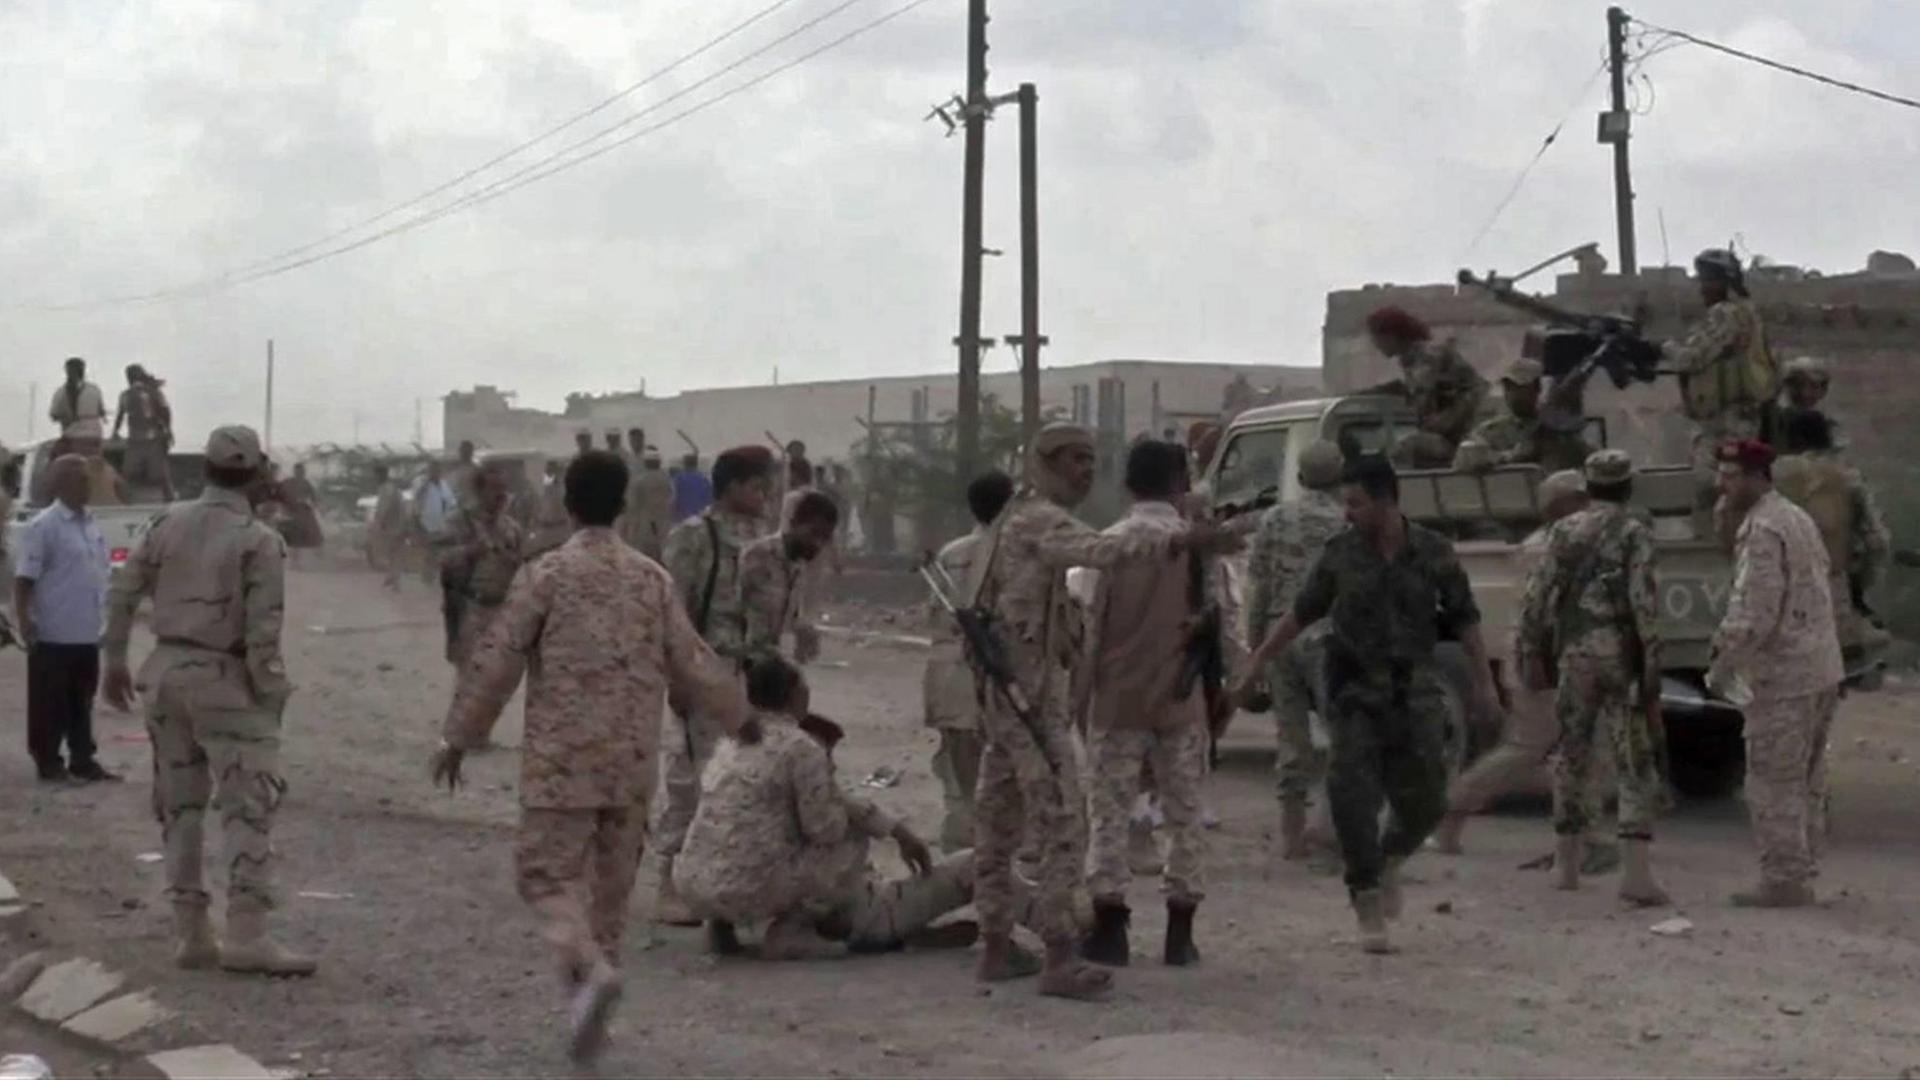 Das Foto aus einem Video zeigt die Situation nach einem Drohnen-Angriff der Huthi-Rebellen auf eine Militärparade an einem Luftwaffenstützpunkt der Armee in der Nähe der jemenitischen Stadt Aden.